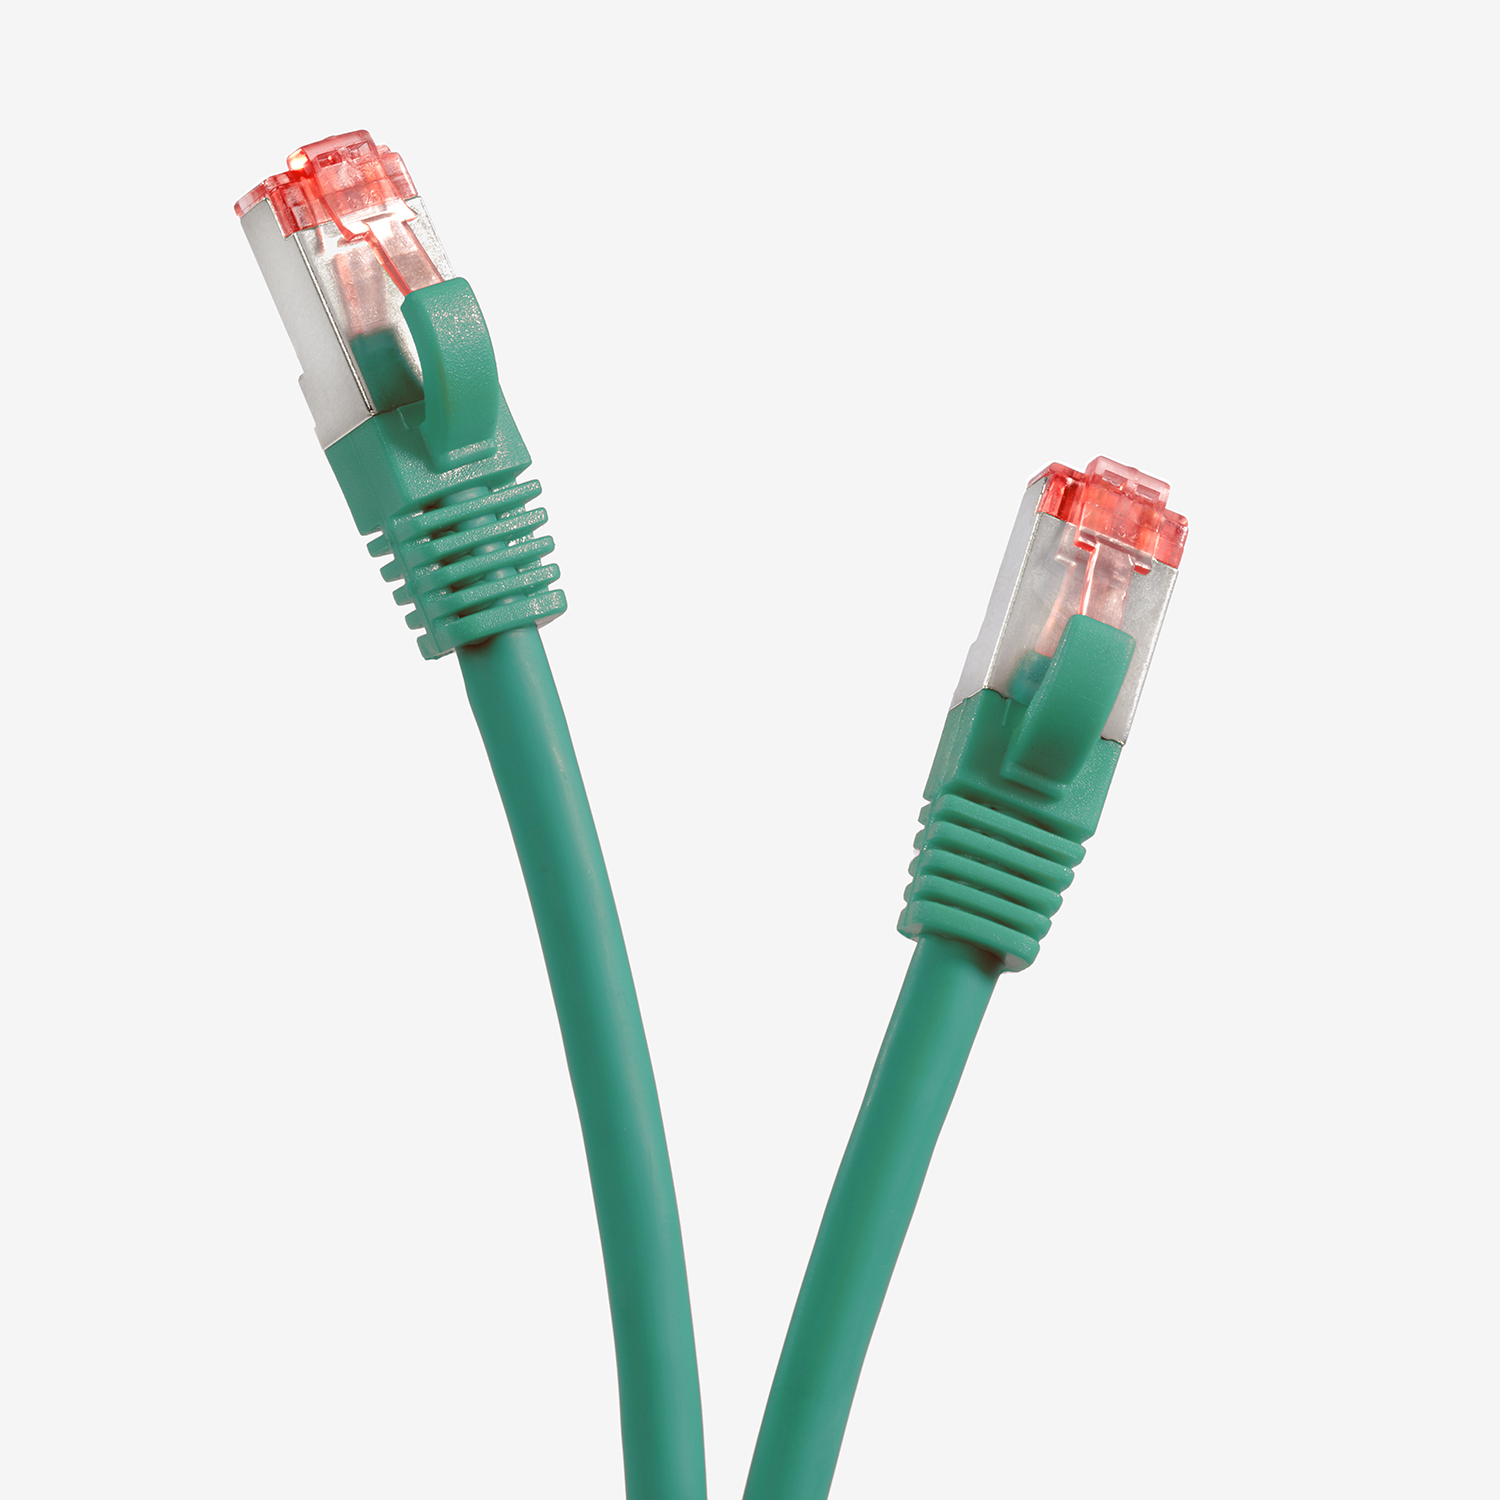 m TPFNET 2m Netzwerkkabel, Netzwerkkabel Patchkabel 5er / 2 Pack S/FTP grün, 1000Mbit,